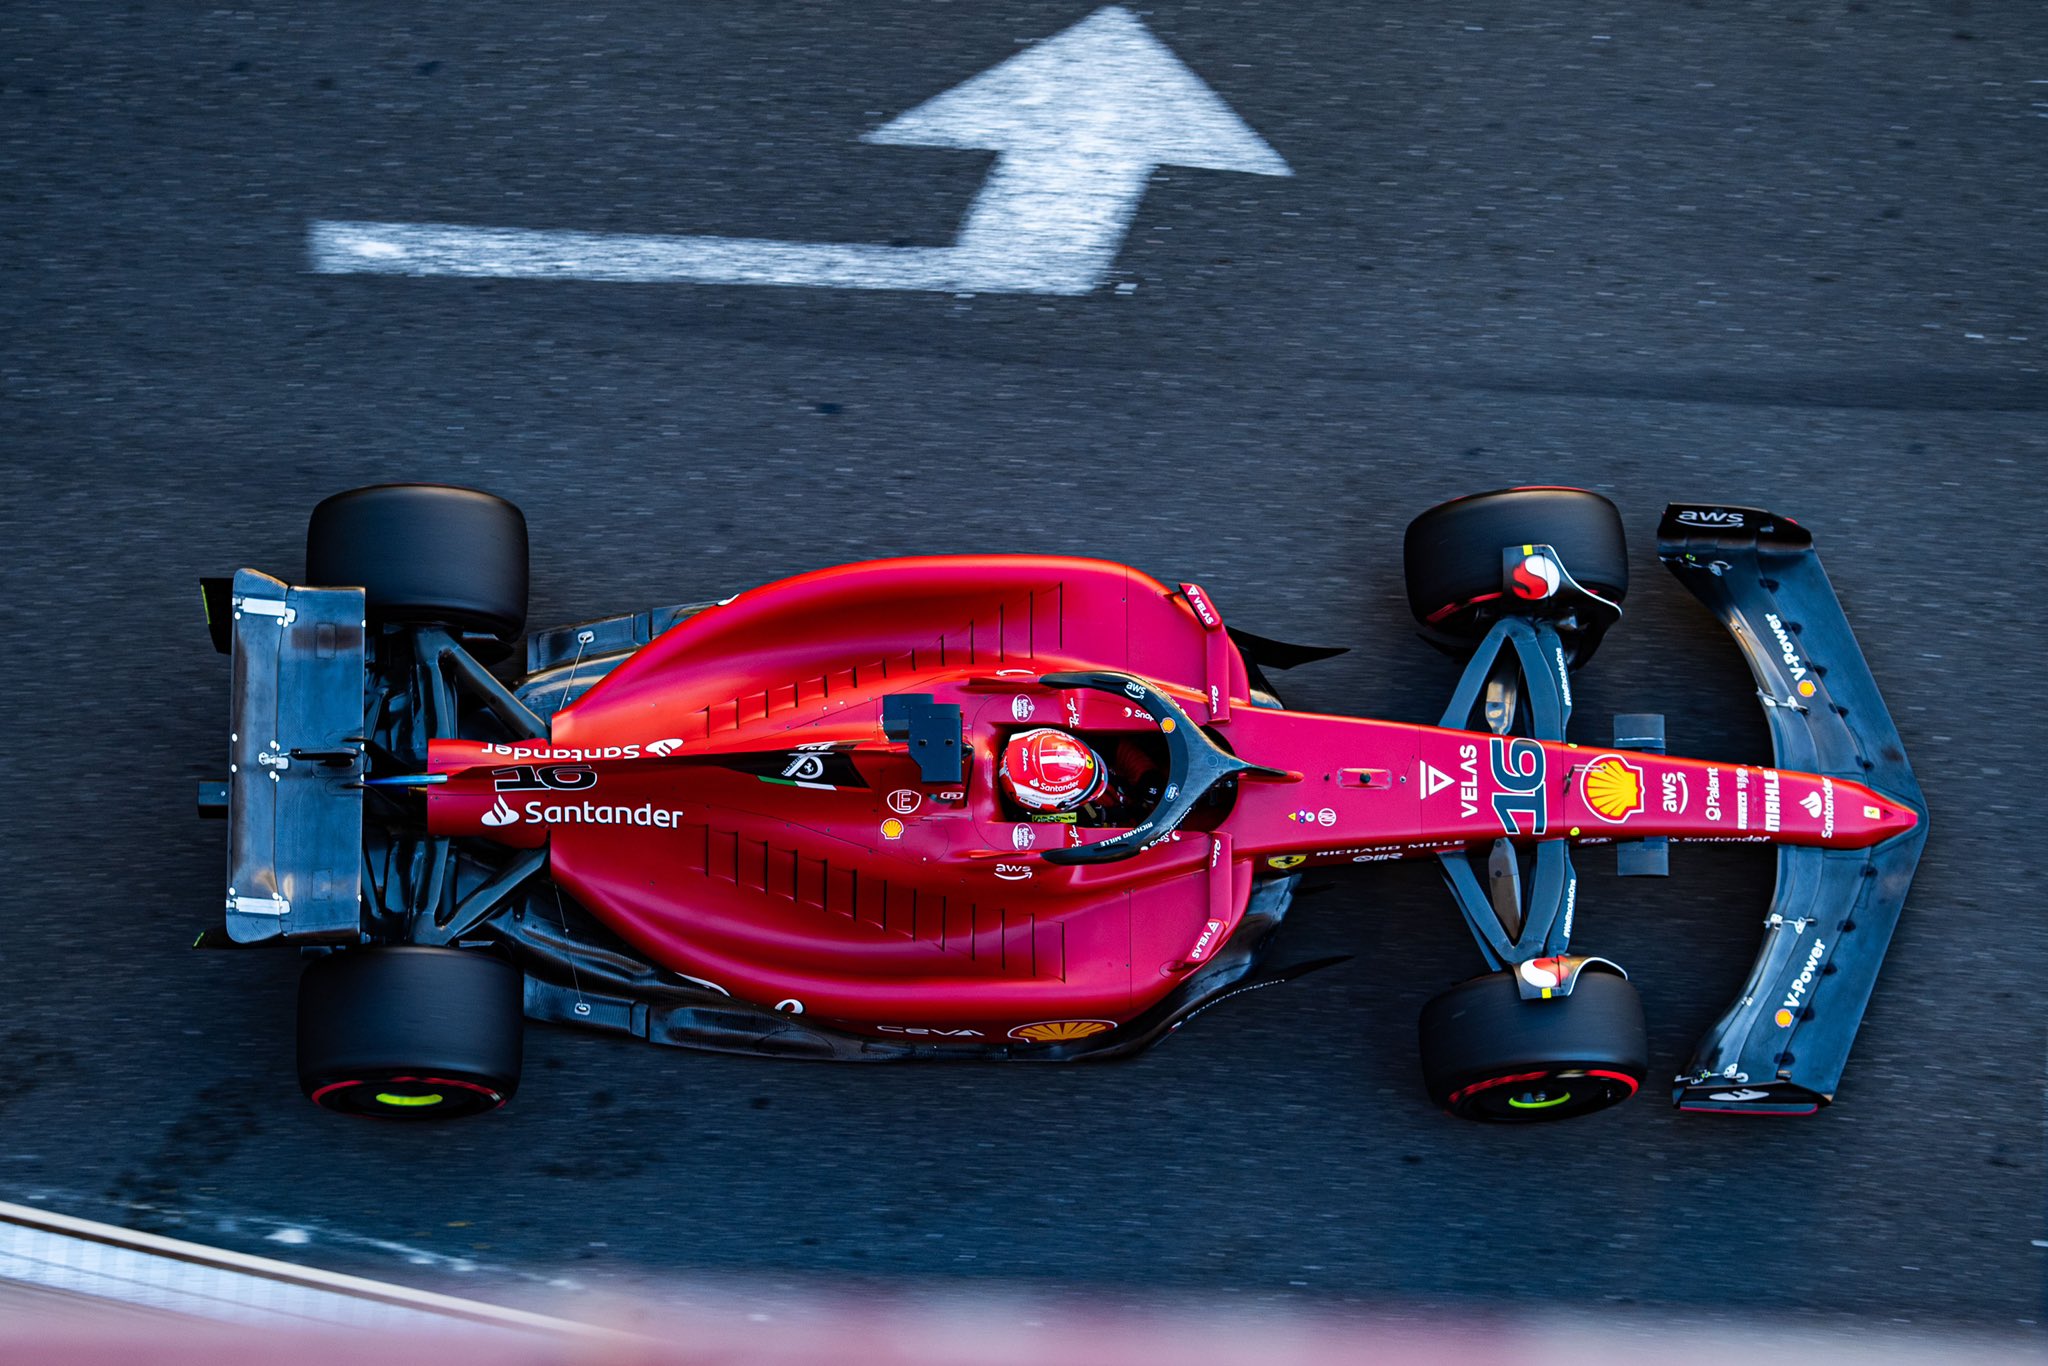 F1 - Charles Leclerc en pole position sur la grille de départ à Bakou